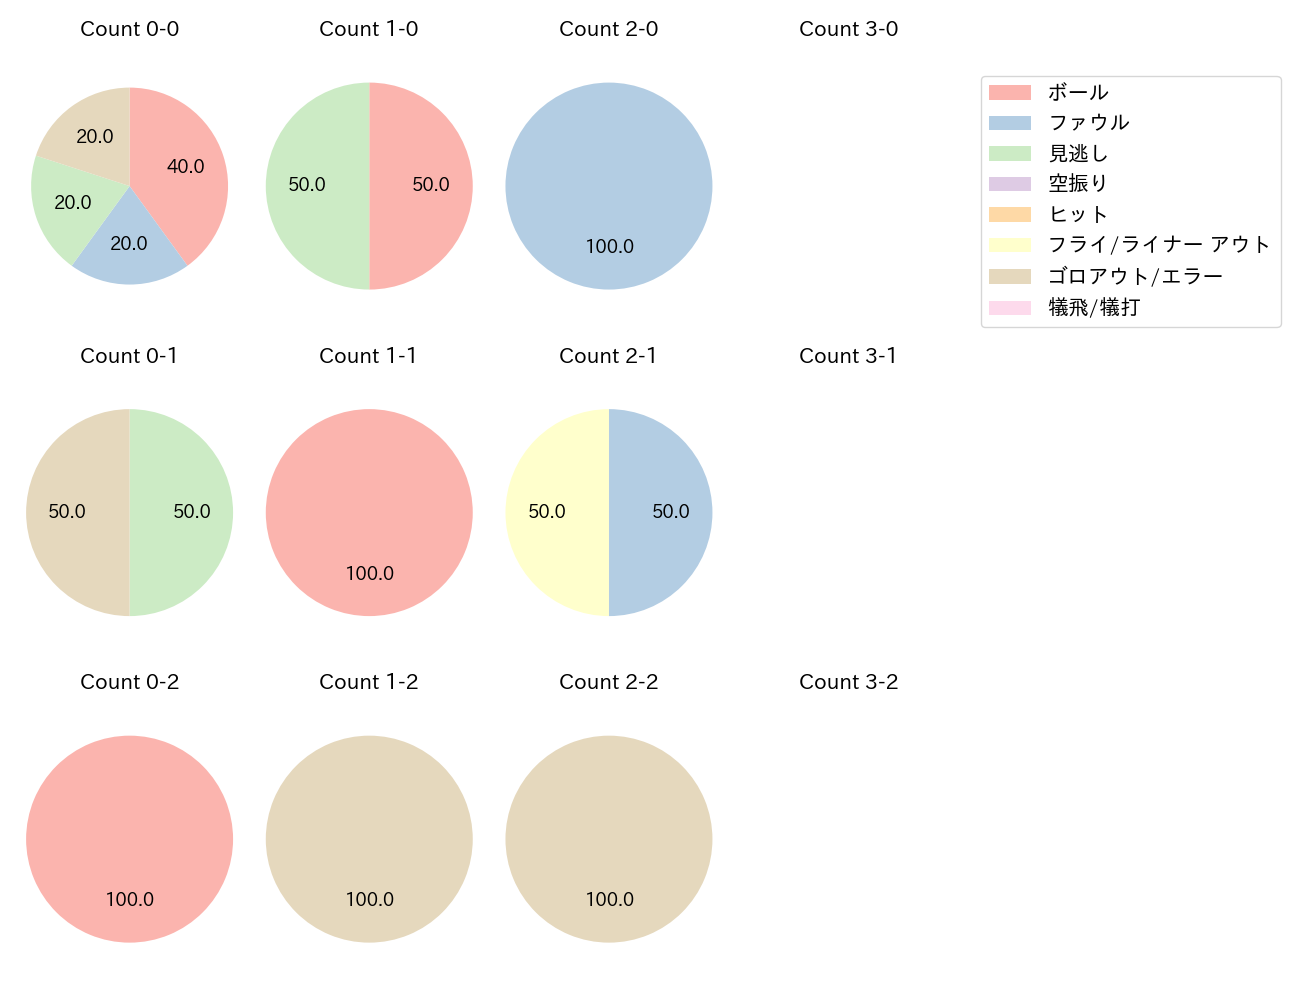 石川 亮の球数分布(2021年8月)